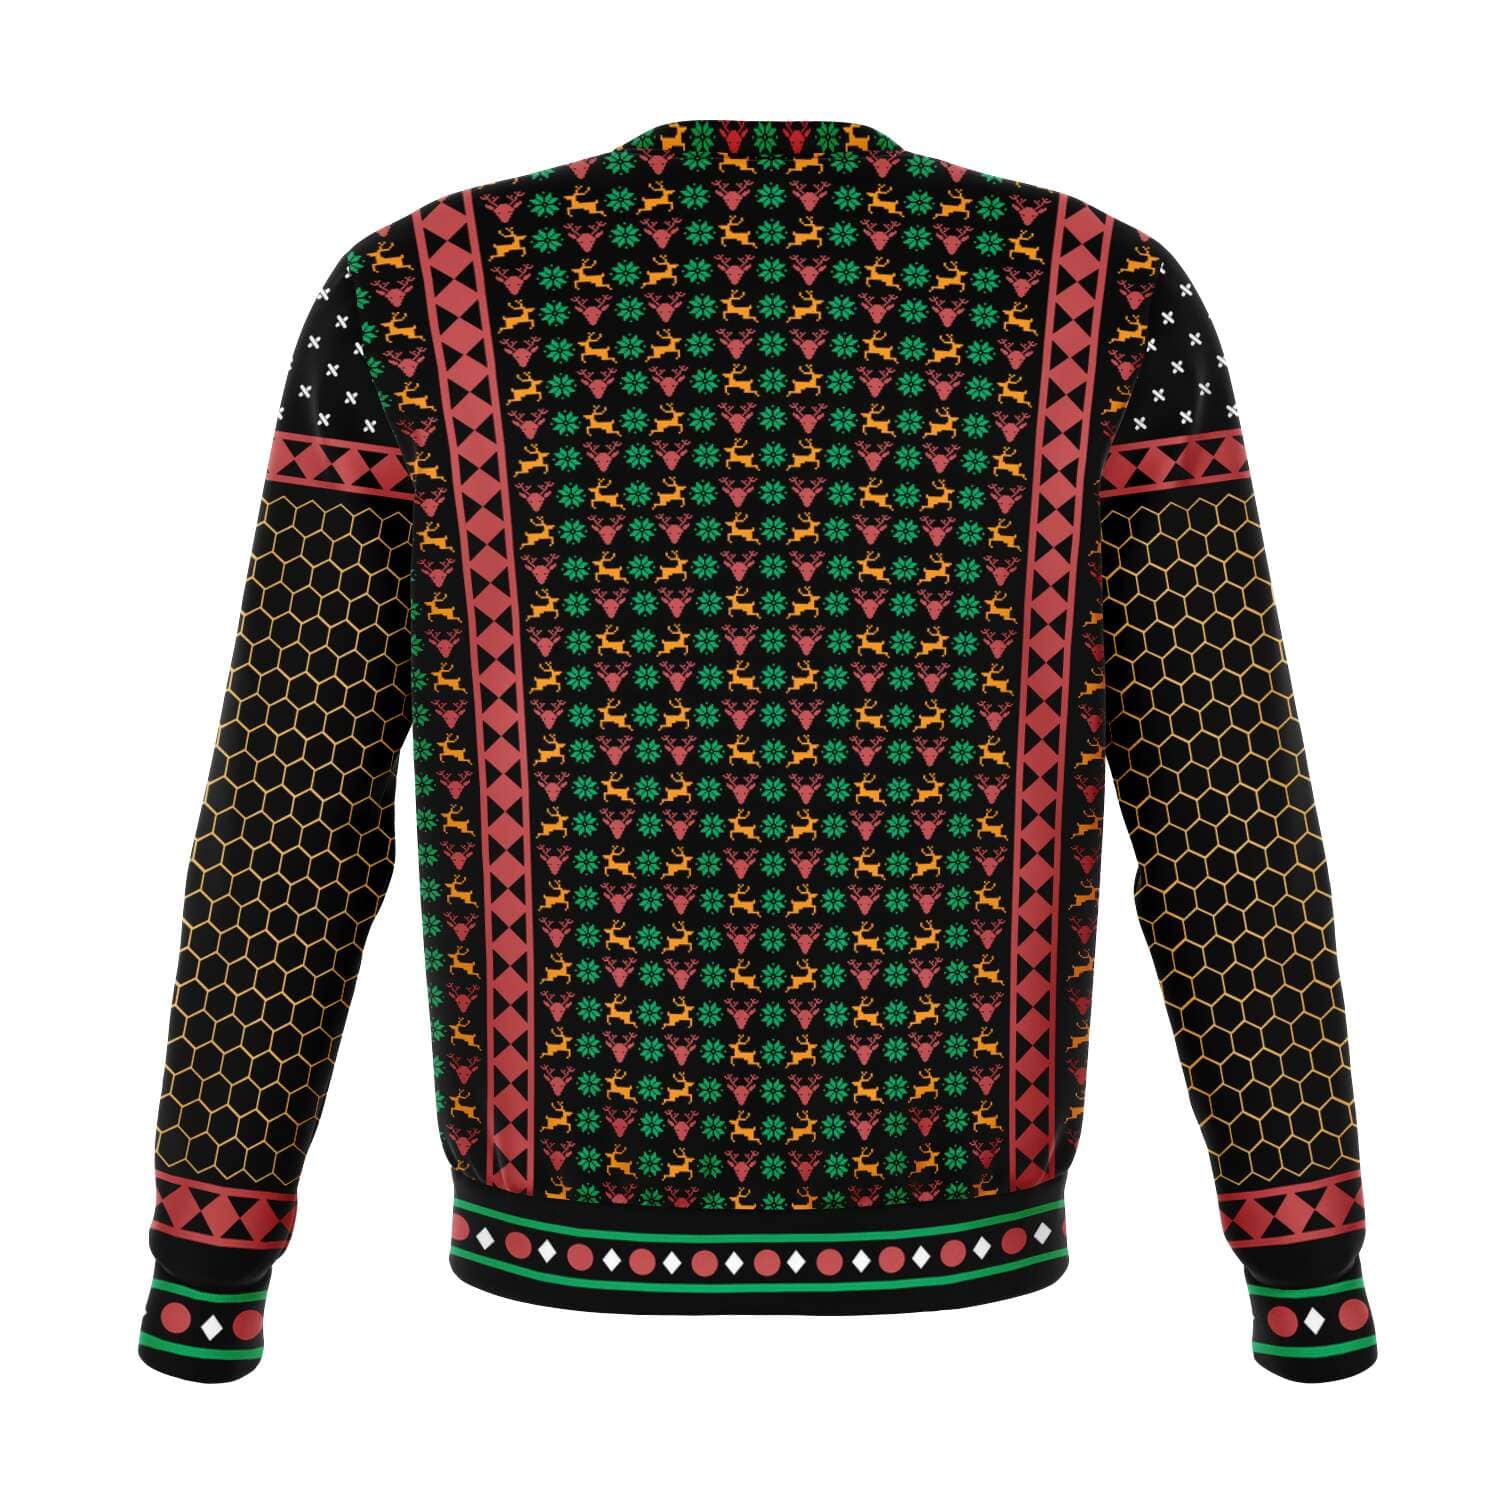 SUBLIMINATOR Bee Merry Ugly Christmas Sweaters Sweatshirt